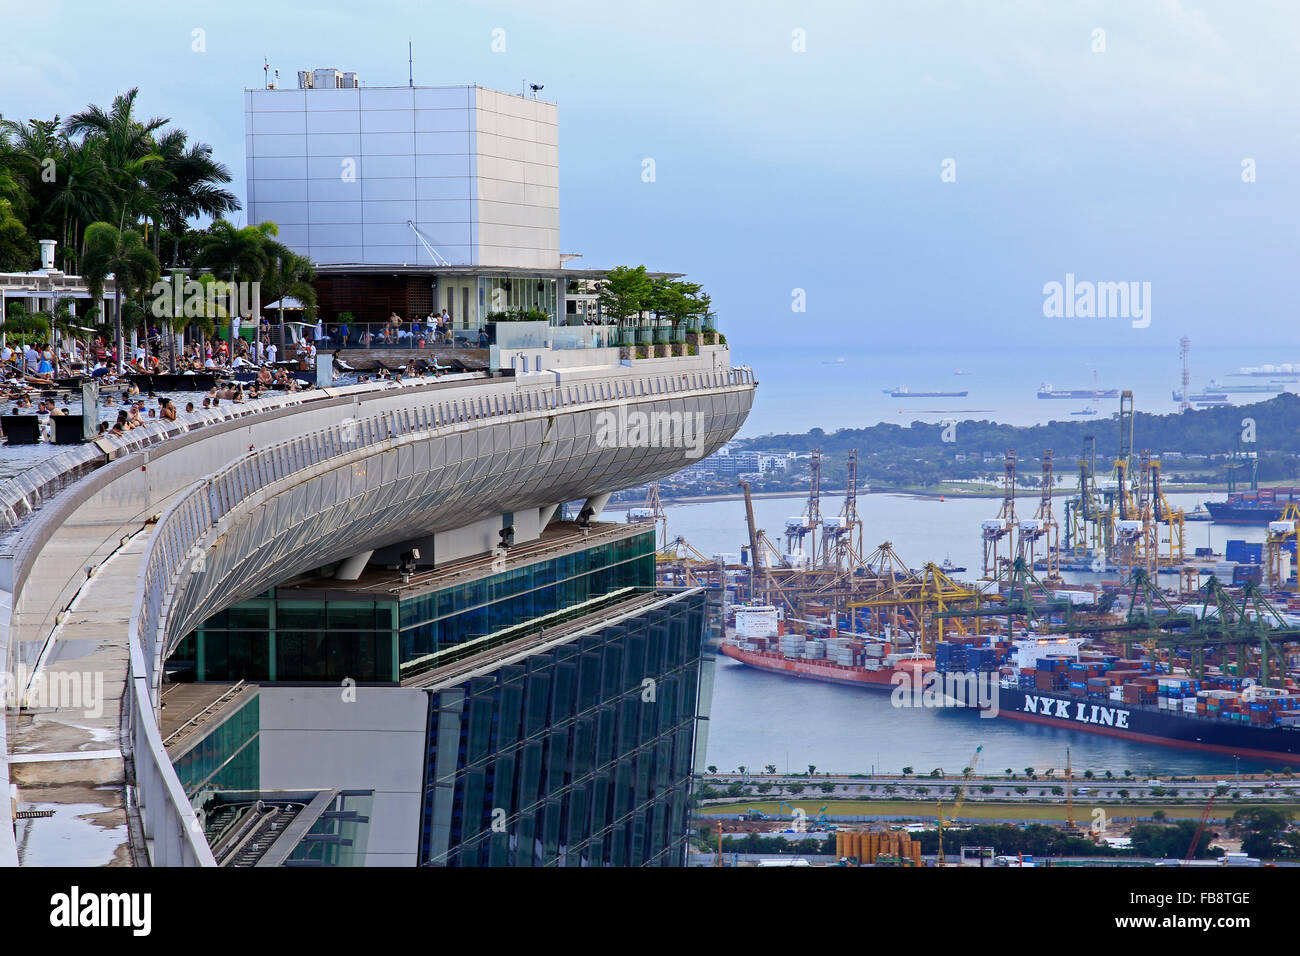 Vue depuis la piscine à débordement du Marina Bay Sands Hotel. Singapour Banque D'Images